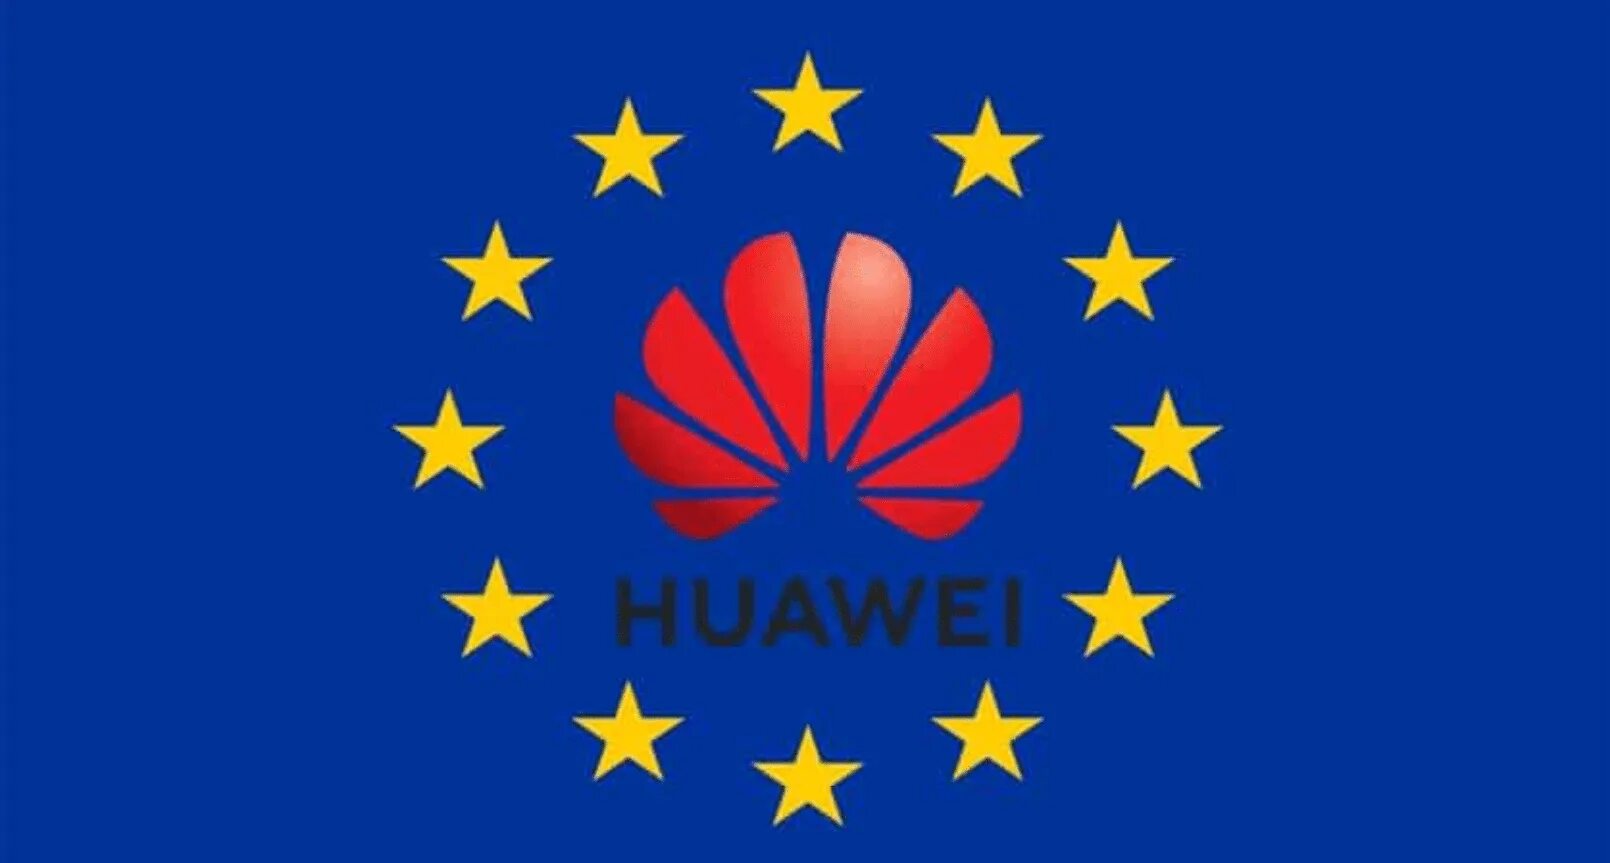 Eu g. Huawei Europe.